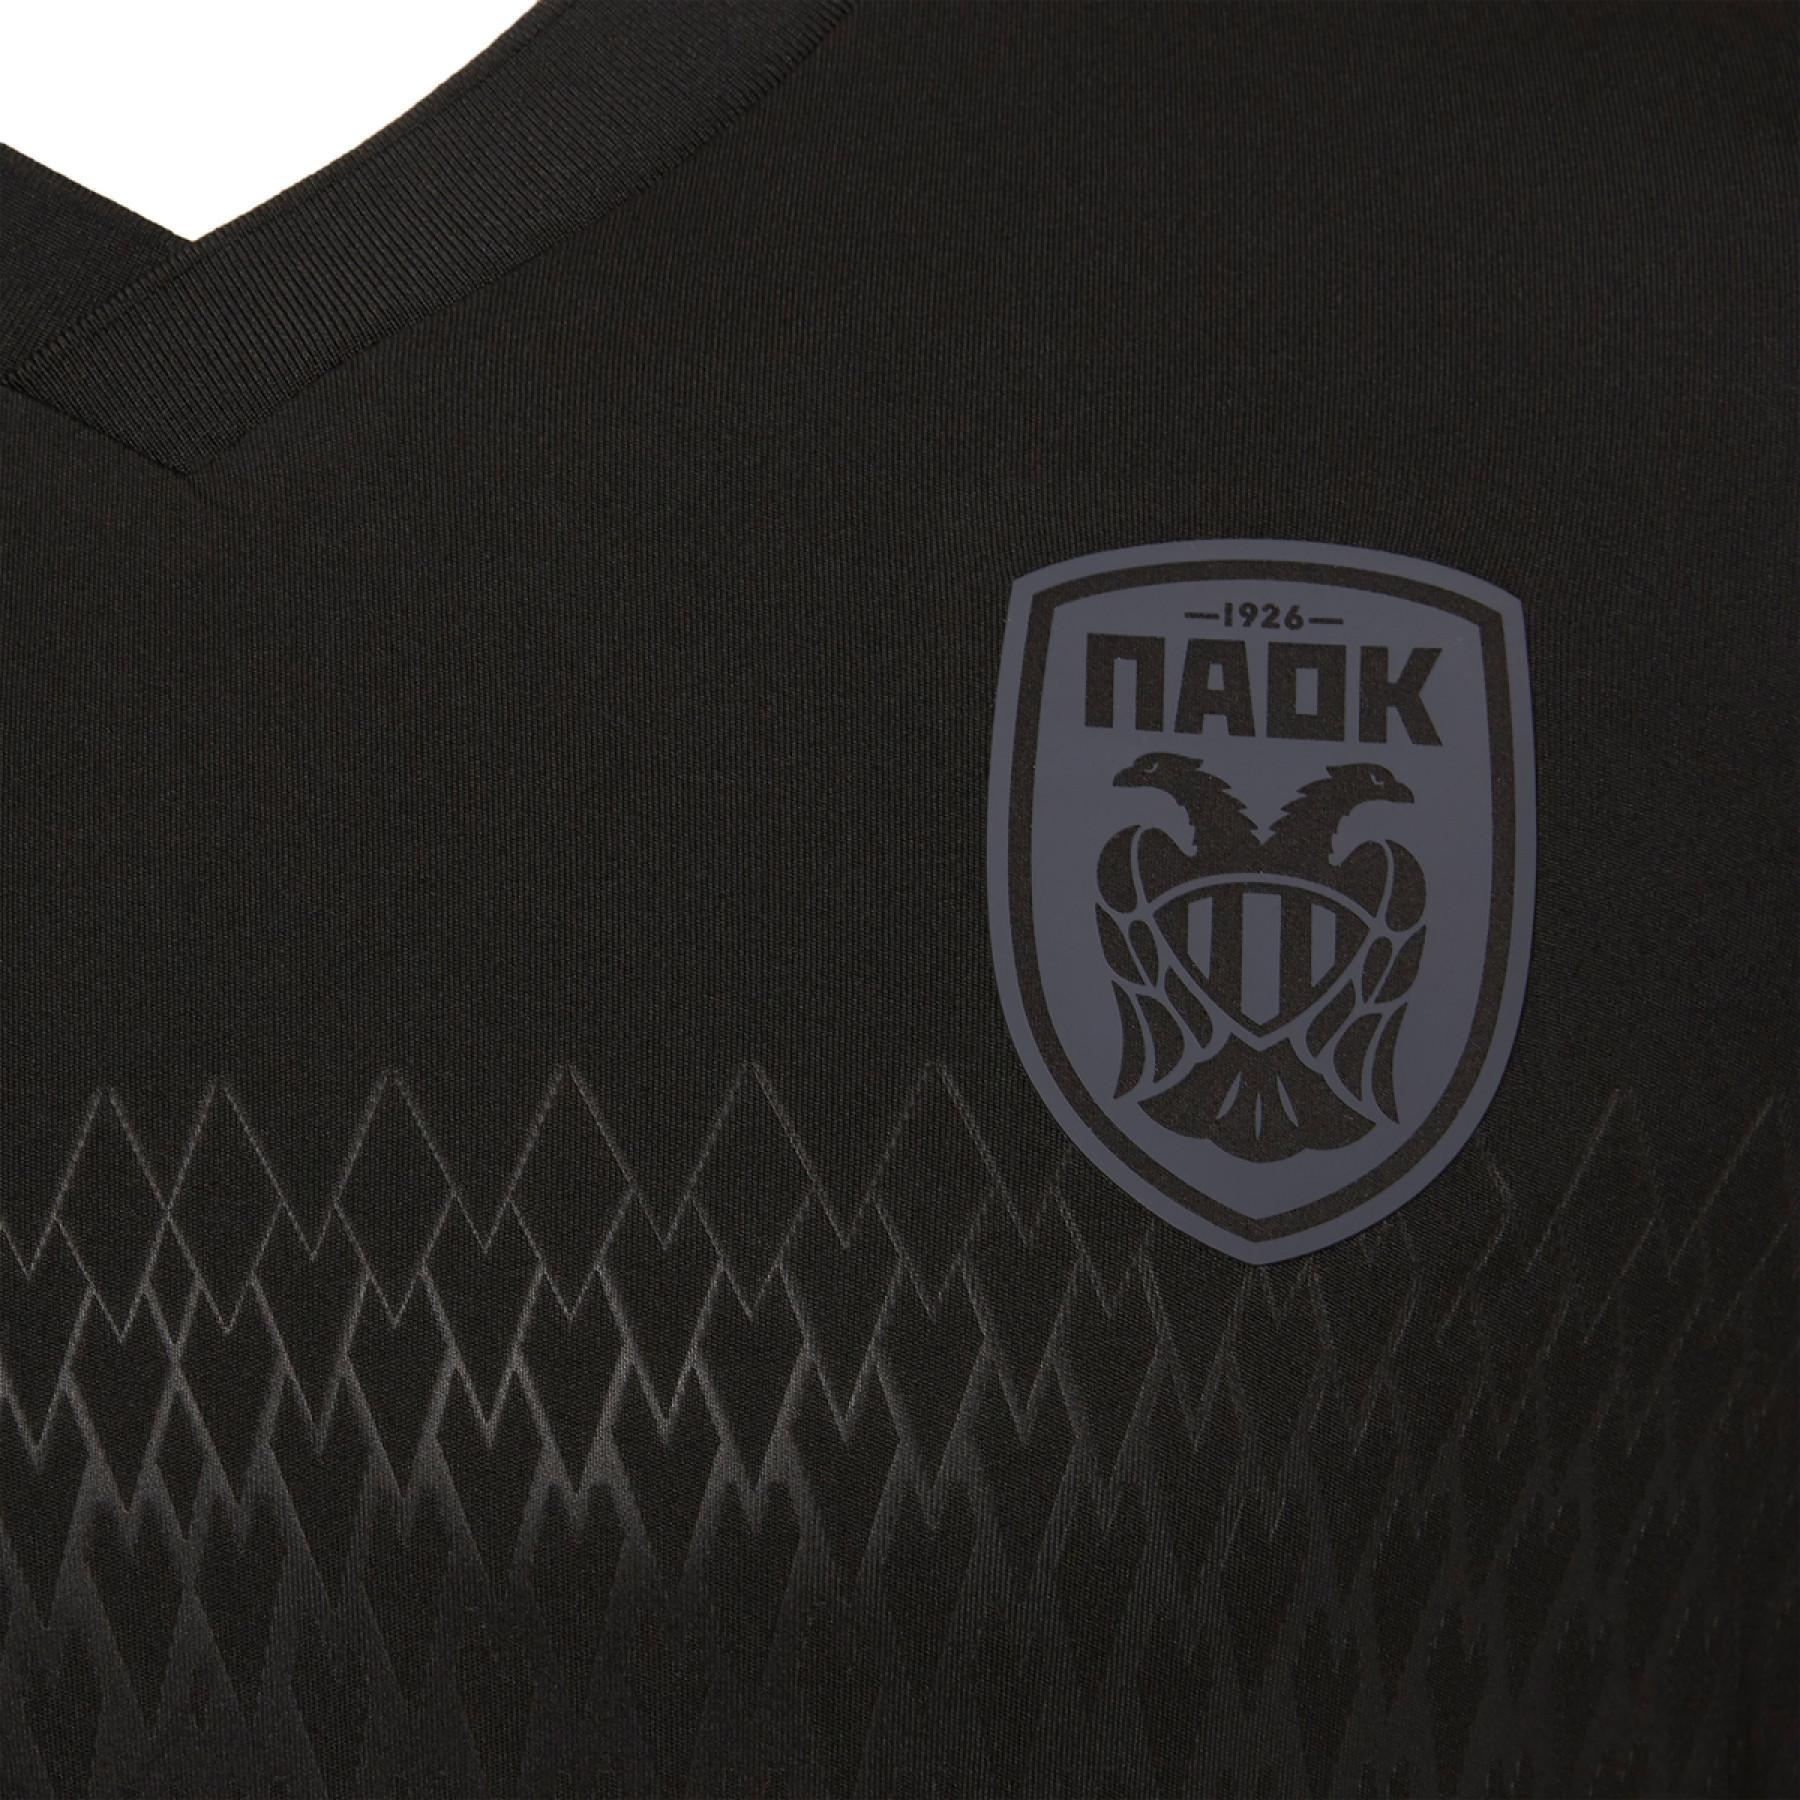 Camiseta segunda equipación PAOK Salonique 2020/21